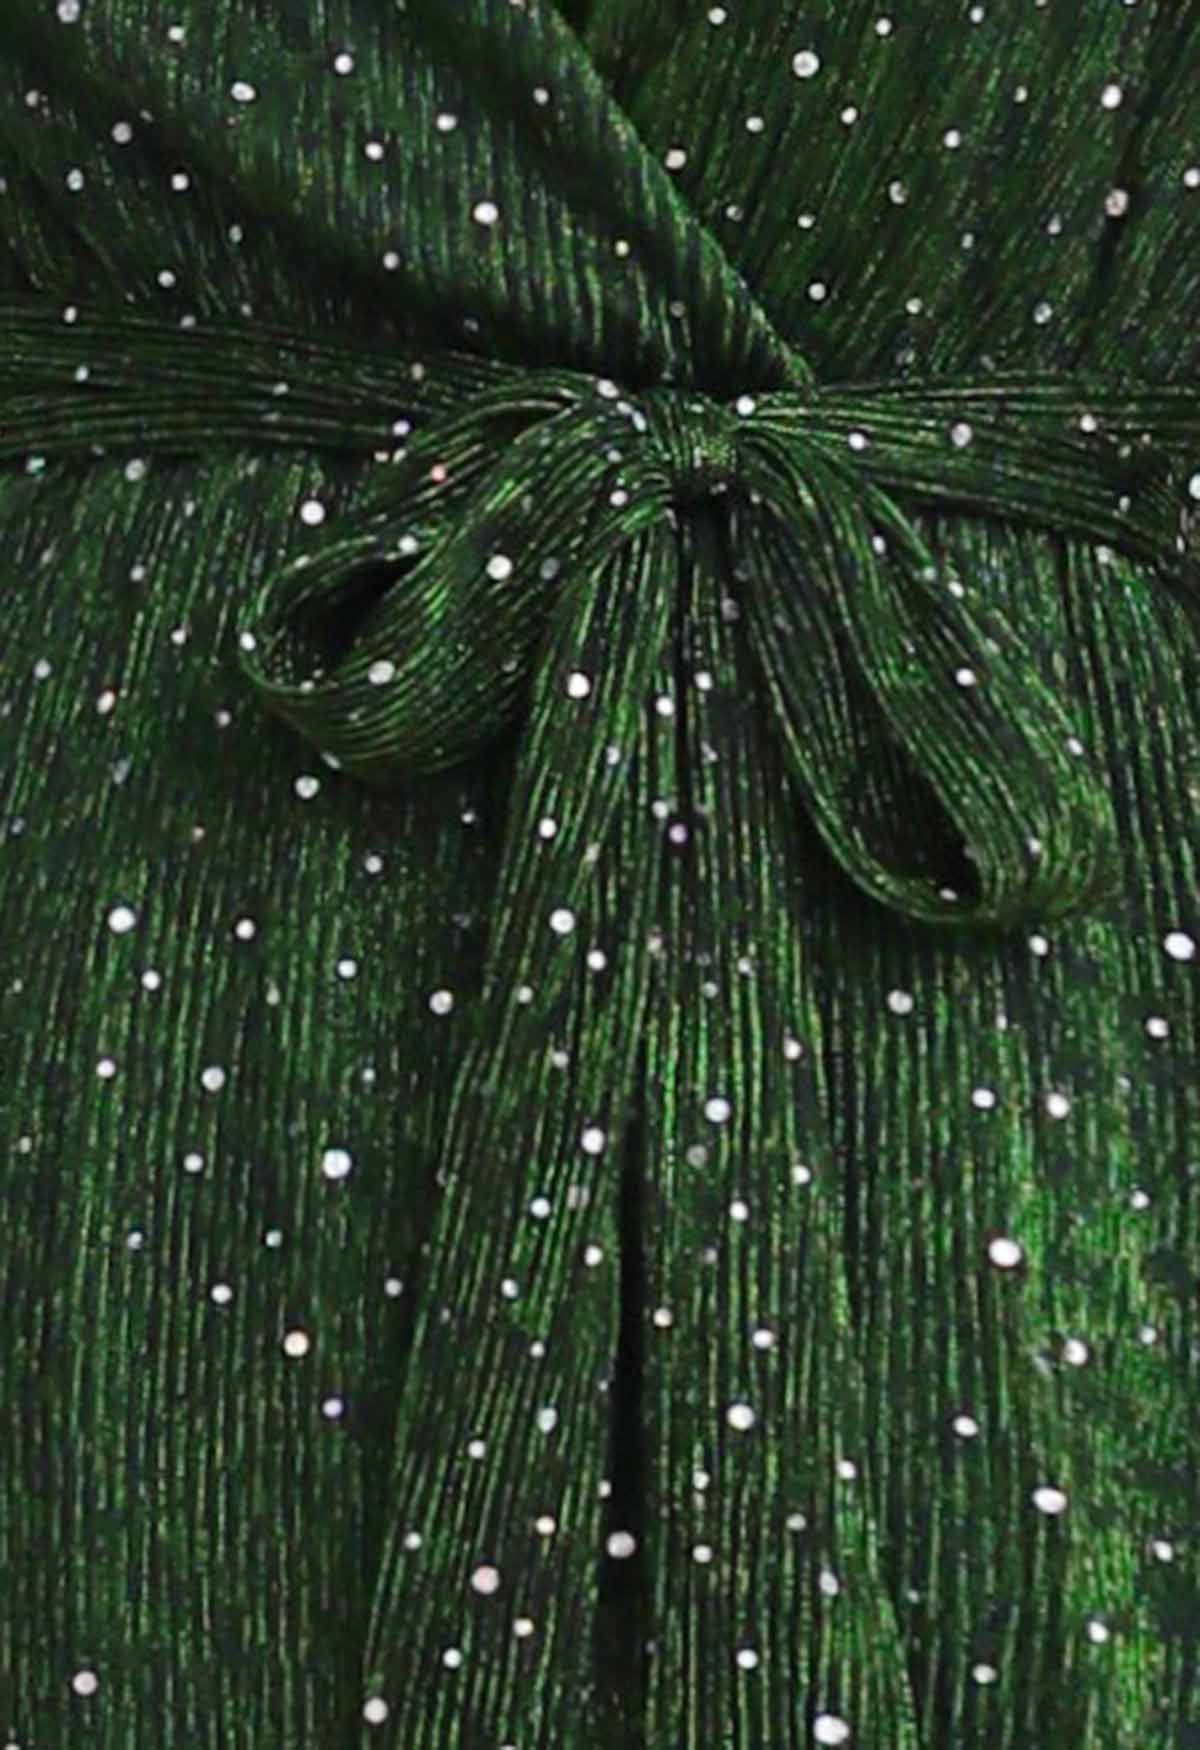 ثوب طويل متألق بالترتر فو التفاف سبليت باللون الأخضر الداكن